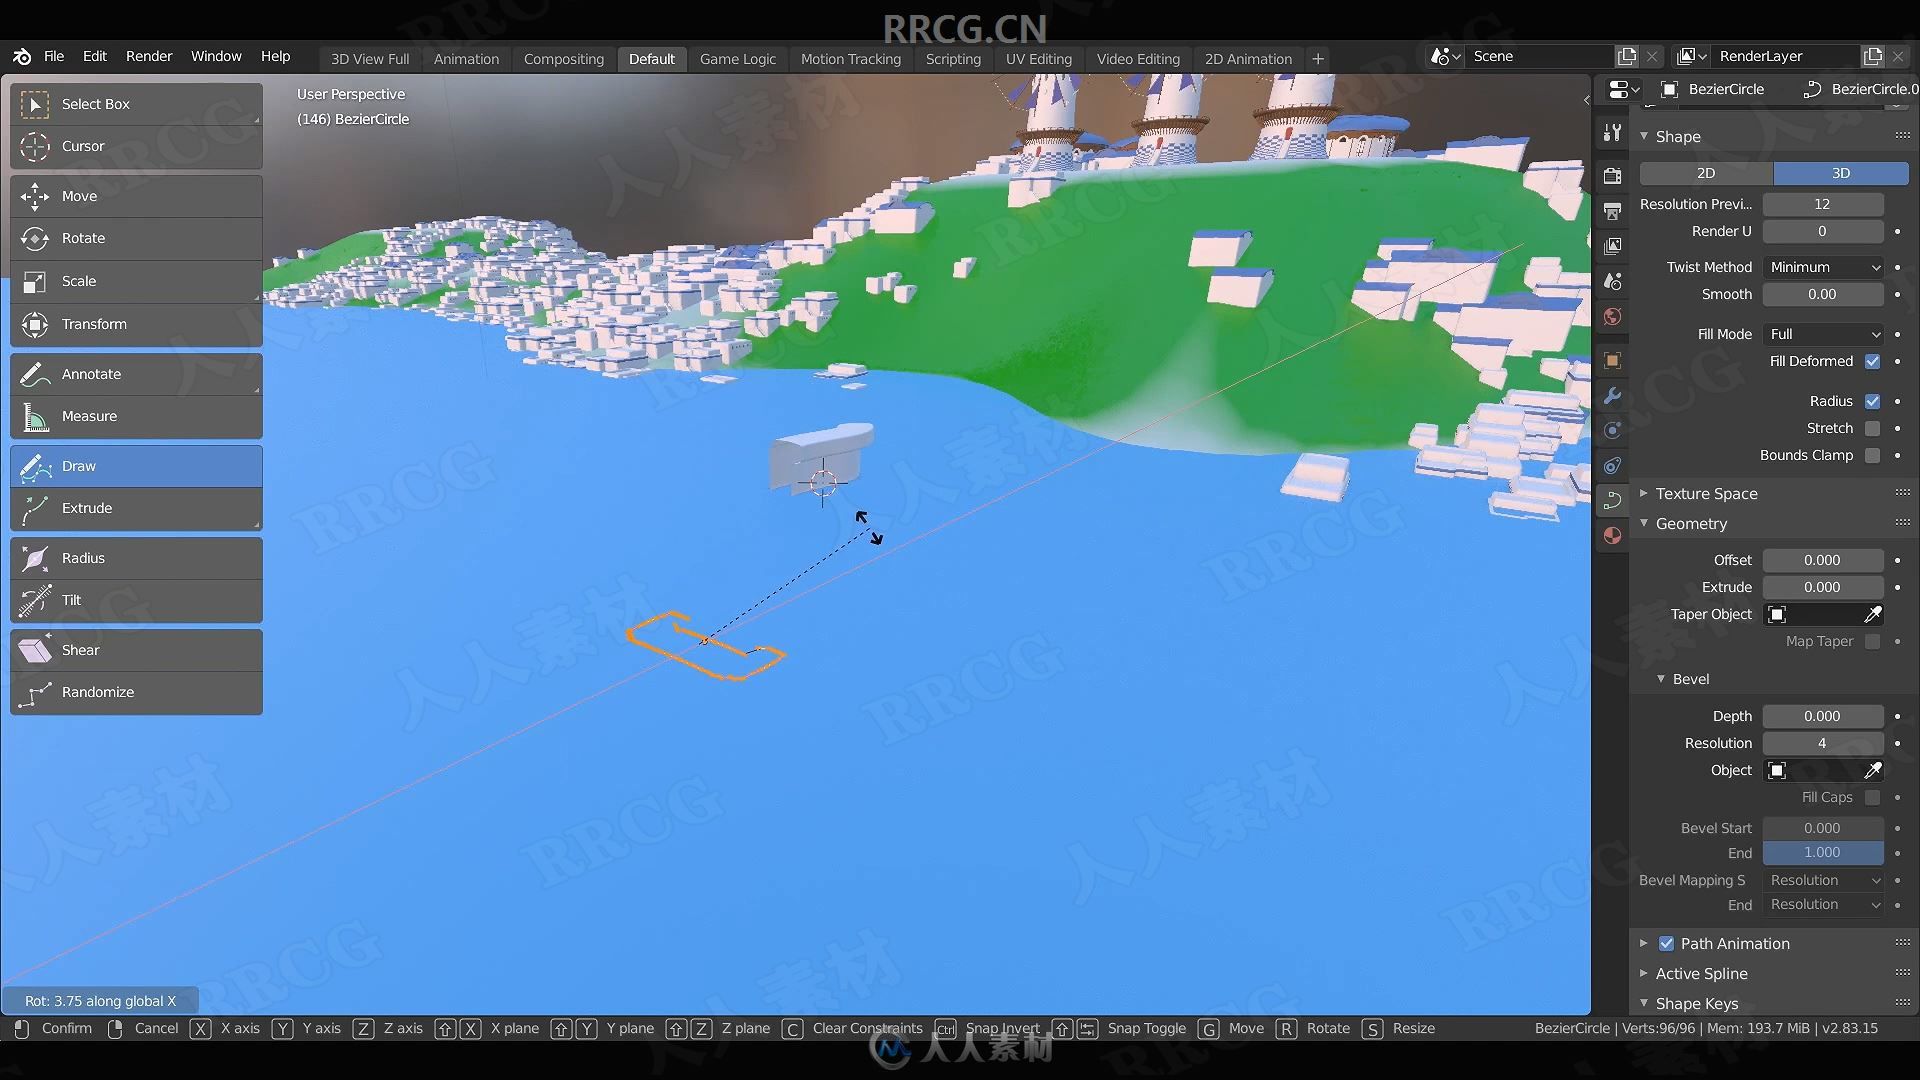 Blender动漫城堡风格3D环境场景设计视频教程